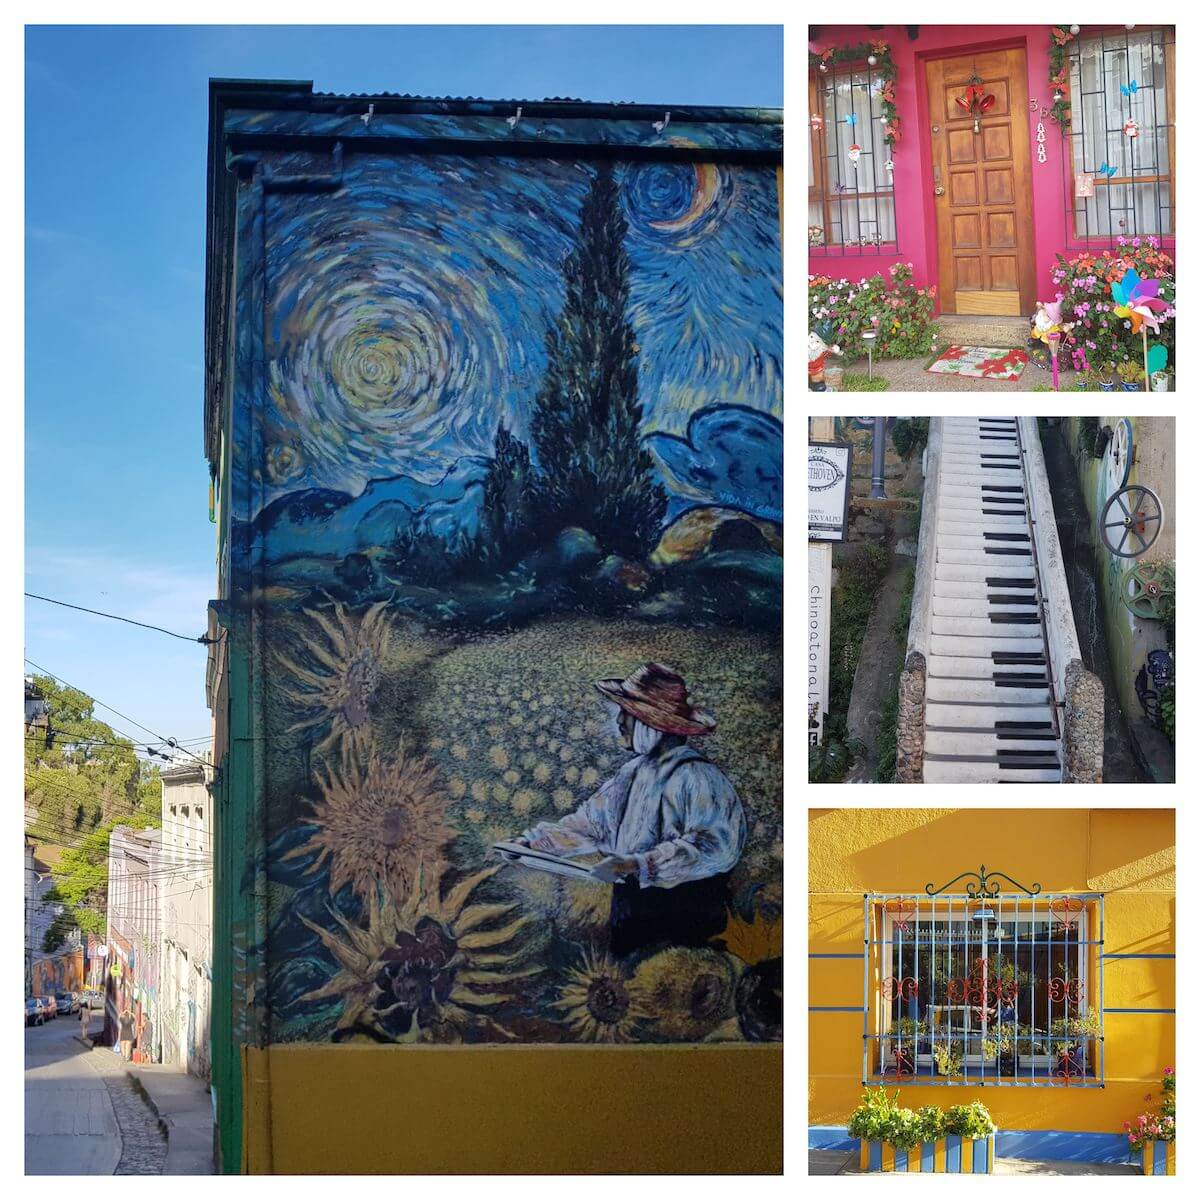 4 Fotos. Destaque na esquerda: um grafite da famosa pintura de girasois de Van Gogh. Superior Direita: uma casa toda colorida e florida. Centro Direita: uma escada com grafite formando teclas de piano. Inferior direita: uma janela azul numa parede amarela.